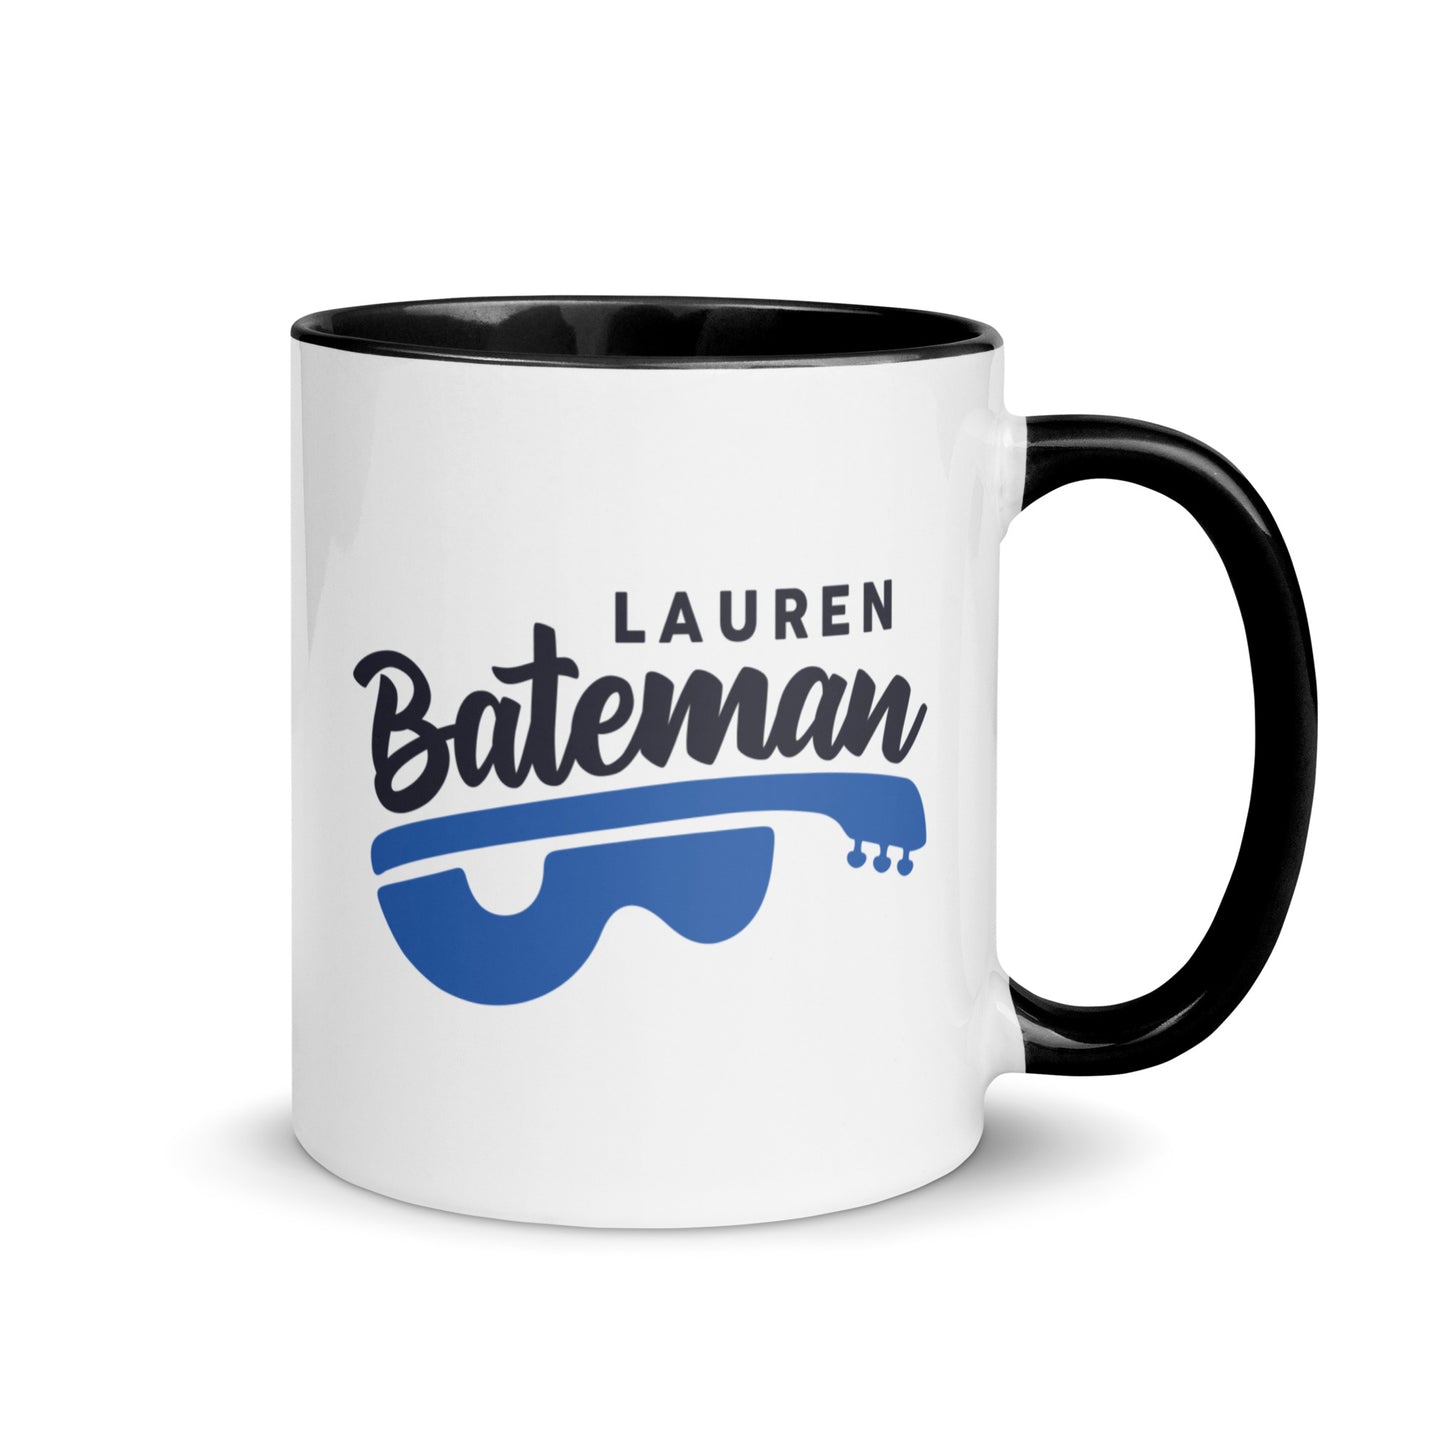 Lauren Bateman Mug with Color Inside